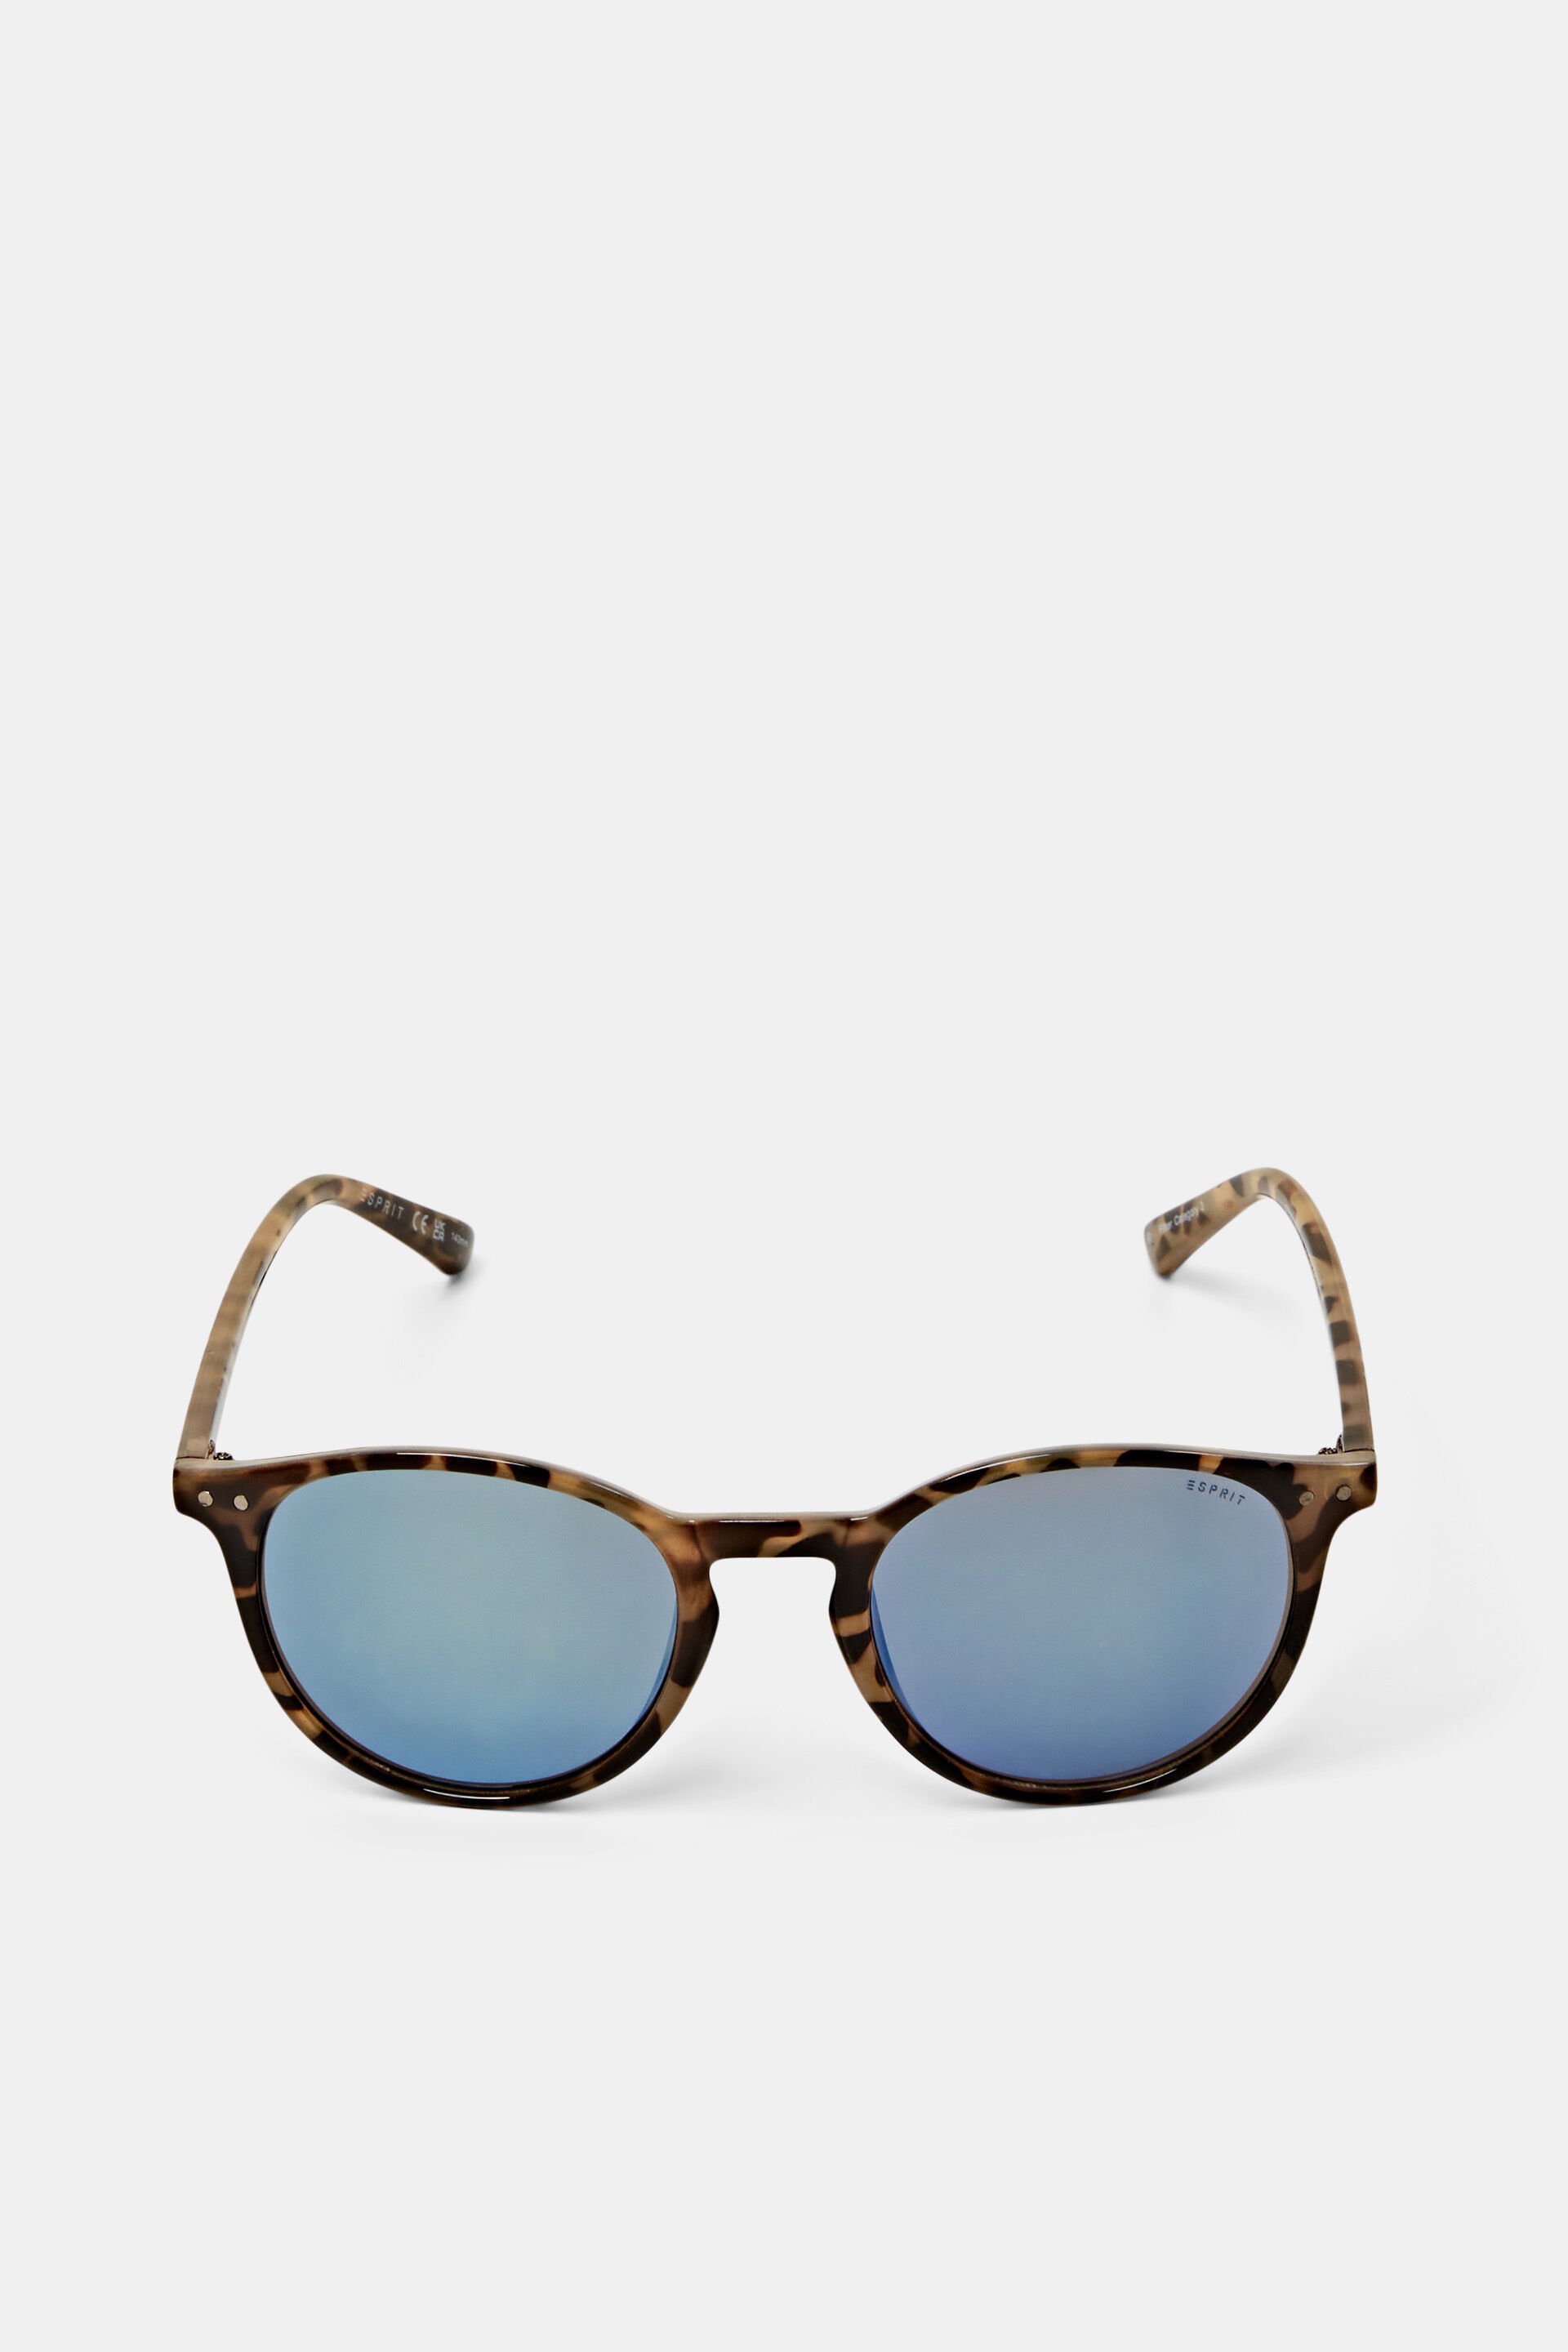 Esprit Mode Unisex sunglasses mirrored lenses with